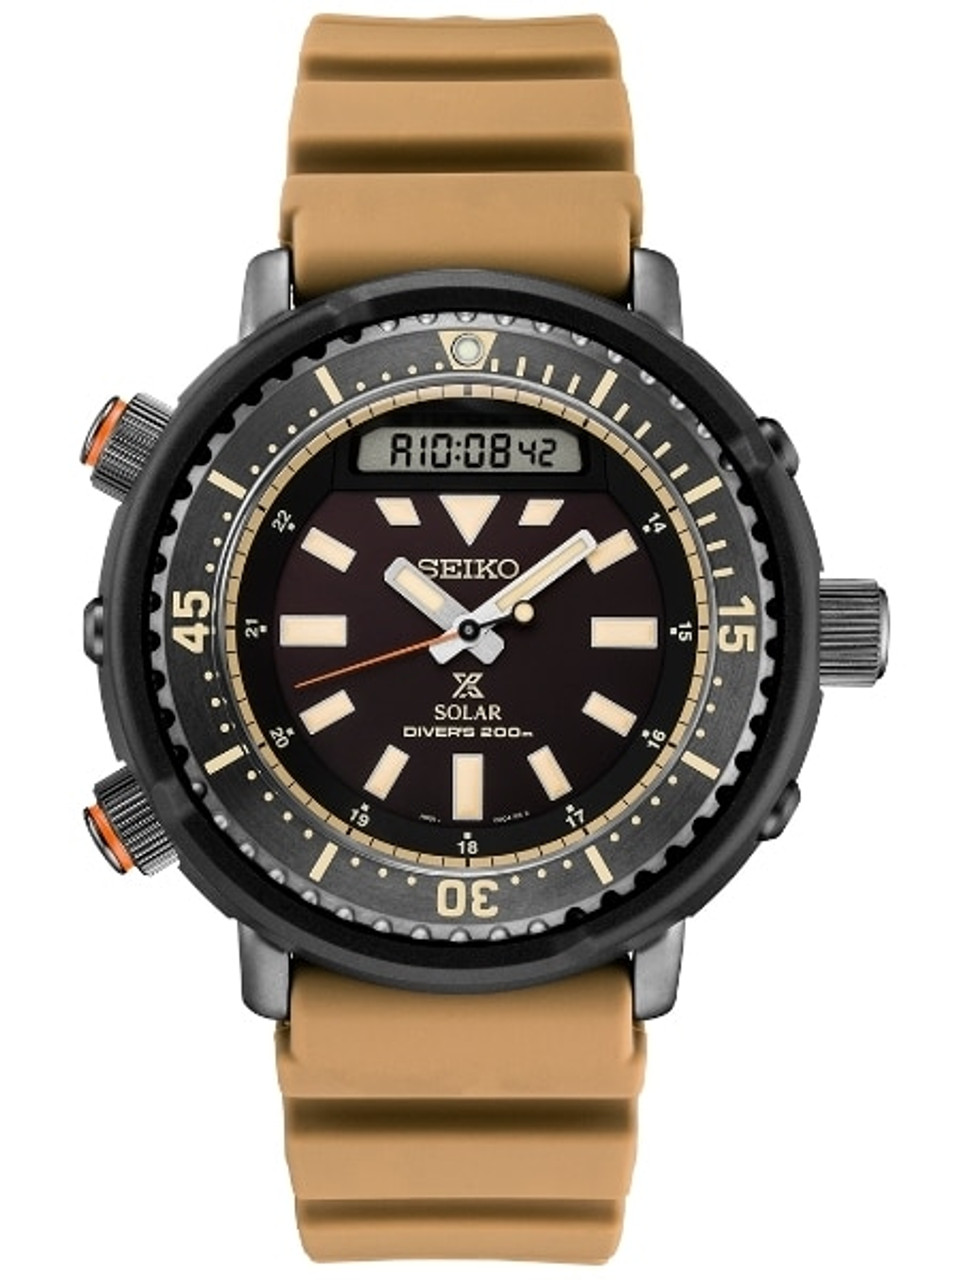 Seiko Arnie Prospex SNJ029 Tuna Solar Powered Dive Watch